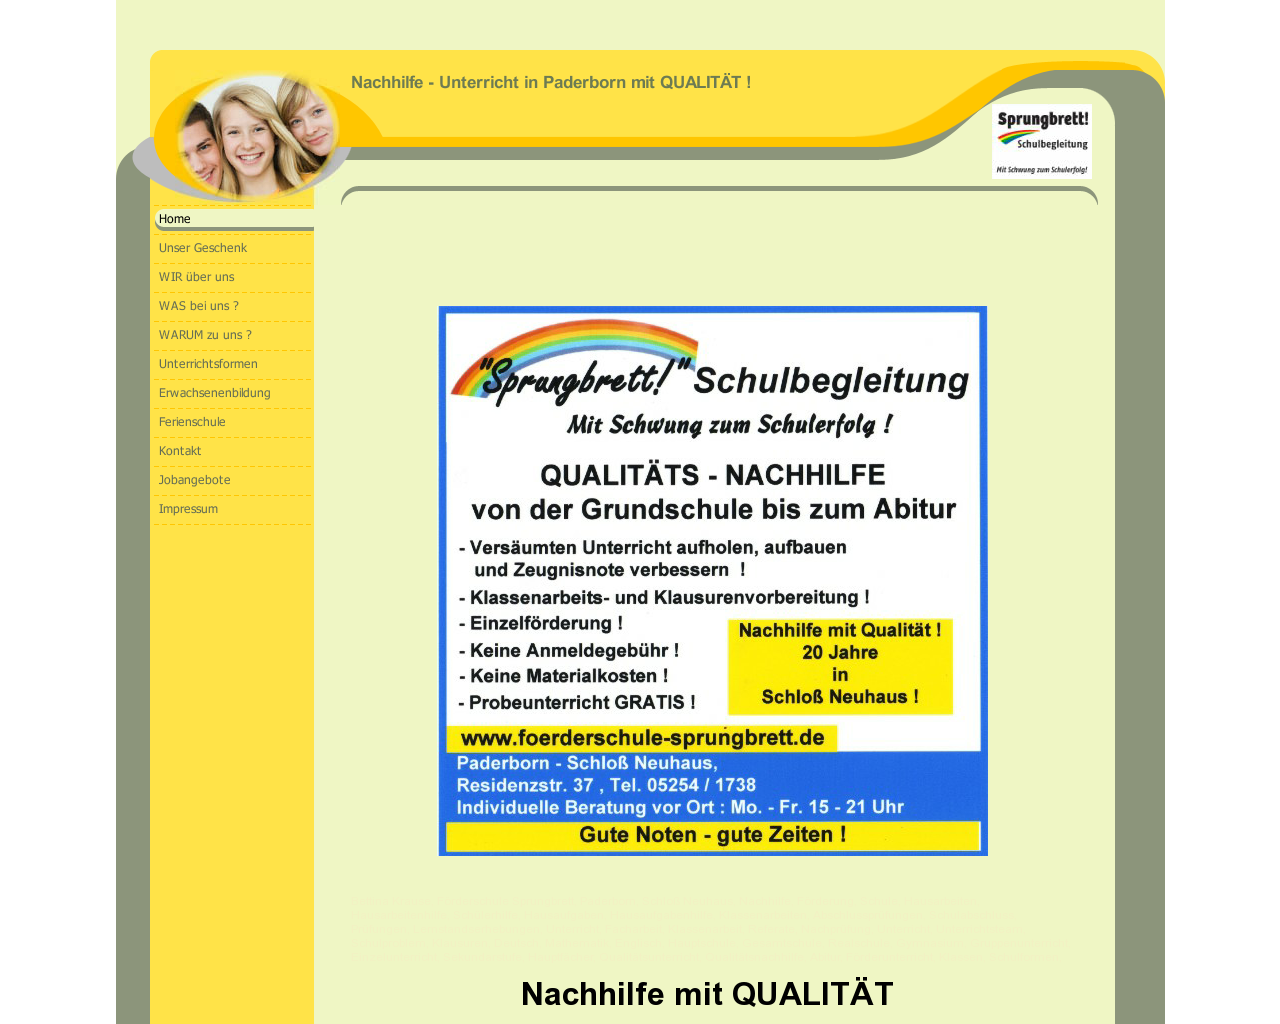 Bild Website foerderschule-sprungbrett.de in 1280x1024